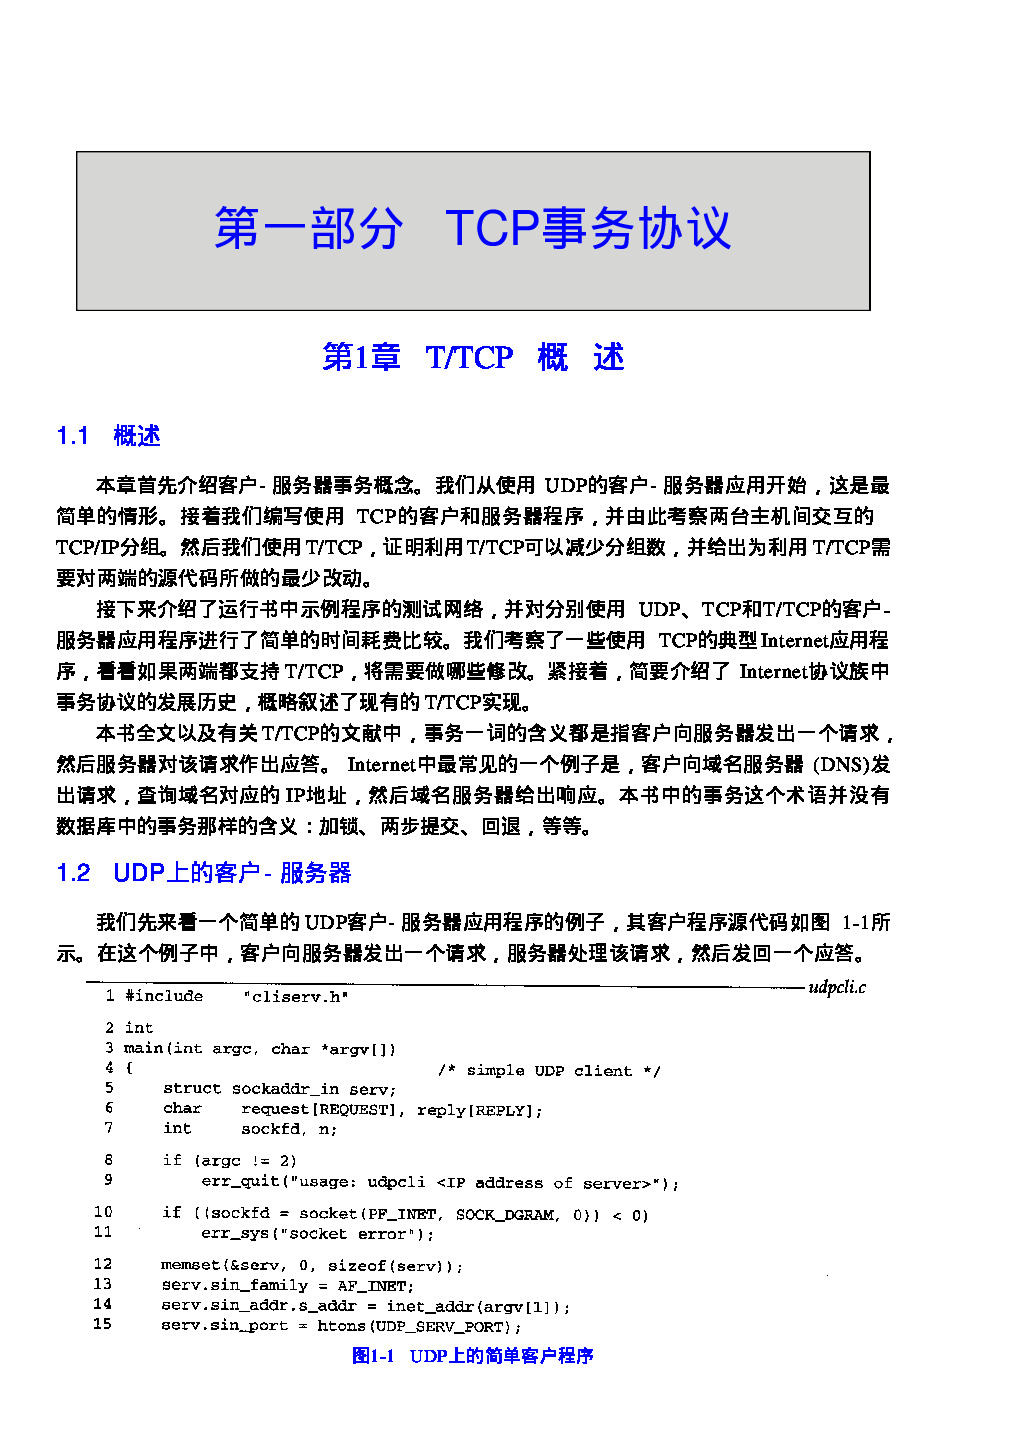 【53】TCP IP详解 卷3：TCP事务协议，HTTP，NNTP和UNIX域协议